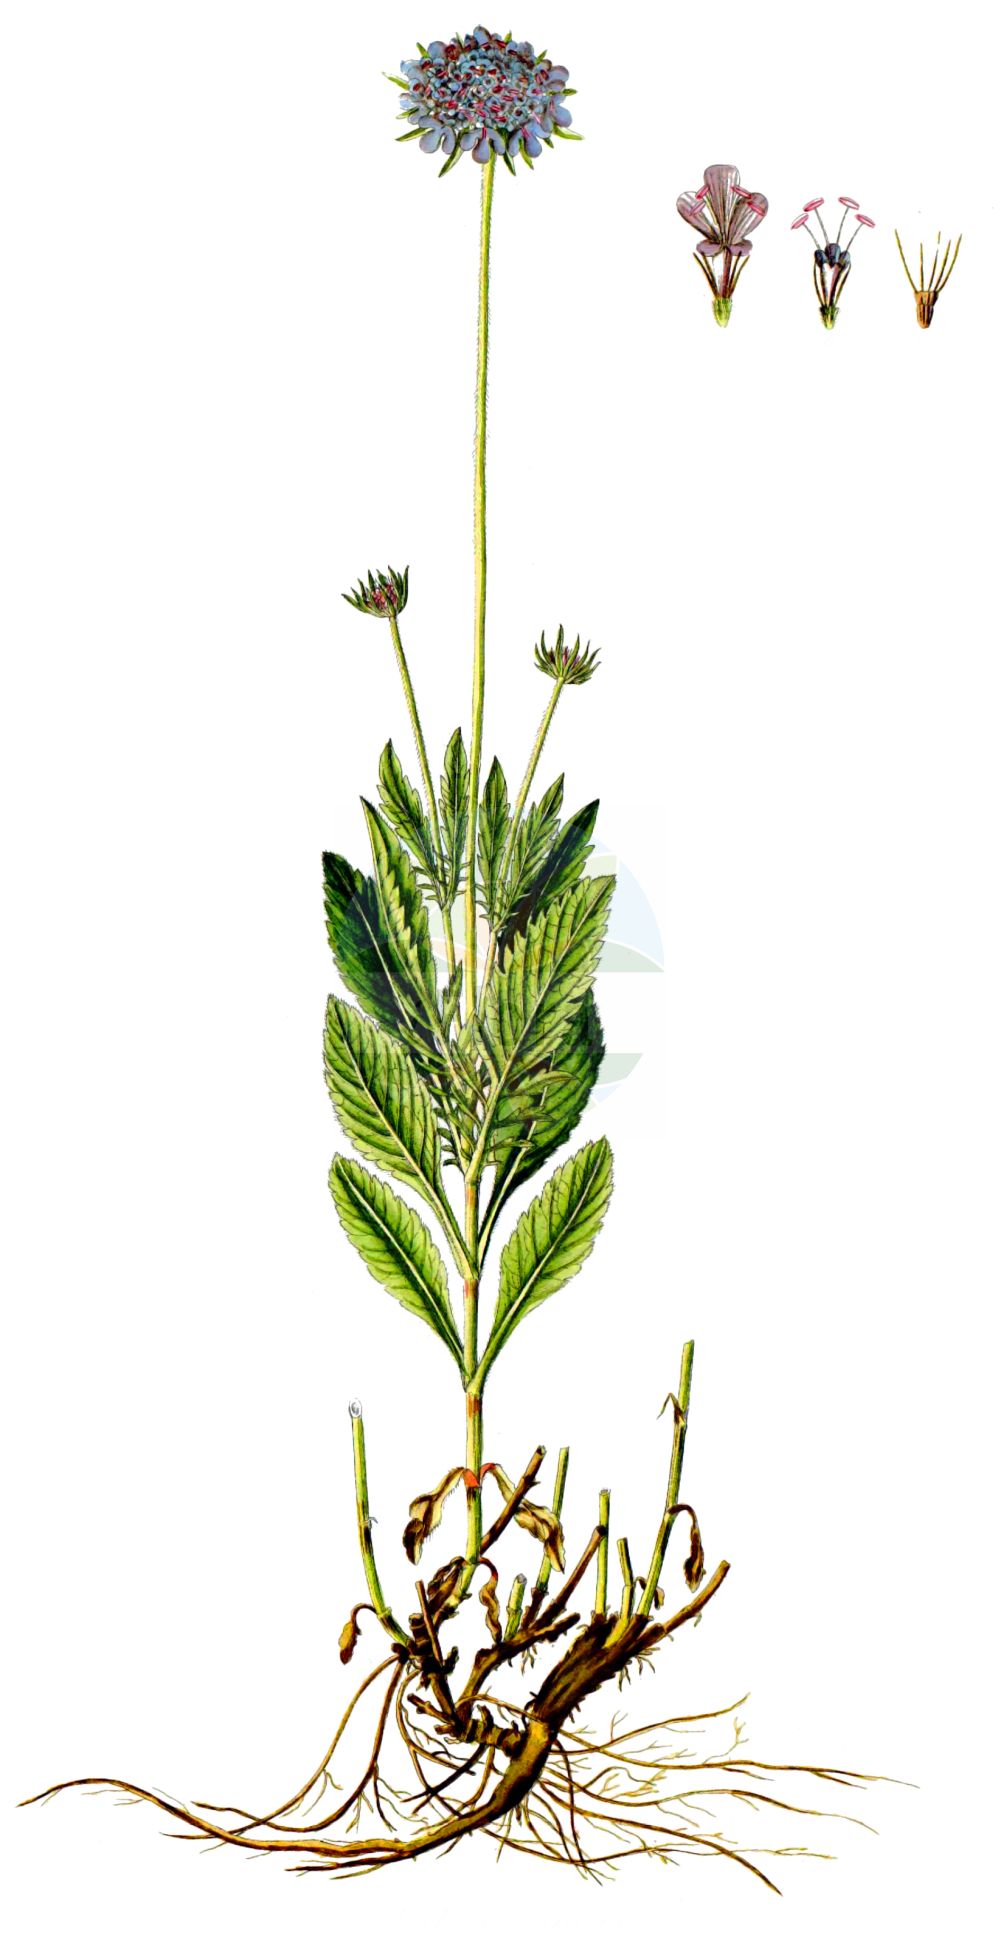 Historische Abbildung von Scabiosa lucida (Glänzende Skabiose - Glossy Scabious). Das Bild zeigt Blatt, Bluete, Frucht und Same. ---- Historical Drawing of Scabiosa lucida (Glänzende Skabiose - Glossy Scabious). The image is showing leaf, flower, fruit and seed.(Scabiosa lucida,Glänzende Skabiose,Glossy Scabious,Scabiosa lucida,Scabiosa opaca,Scabiosa pubescens,Glaenzende Skabiose,Glossy Scabious,Shining Scabious,Scabiosa,Skabiose,Scabious,Caprifoliaceae,Geißblattgewächse,Honeysuckle family,Blatt,Bluete,Frucht,Same,leaf,flower,fruit,seed,Waldstein-Wartenberg & Kitaibel (1799-1812))